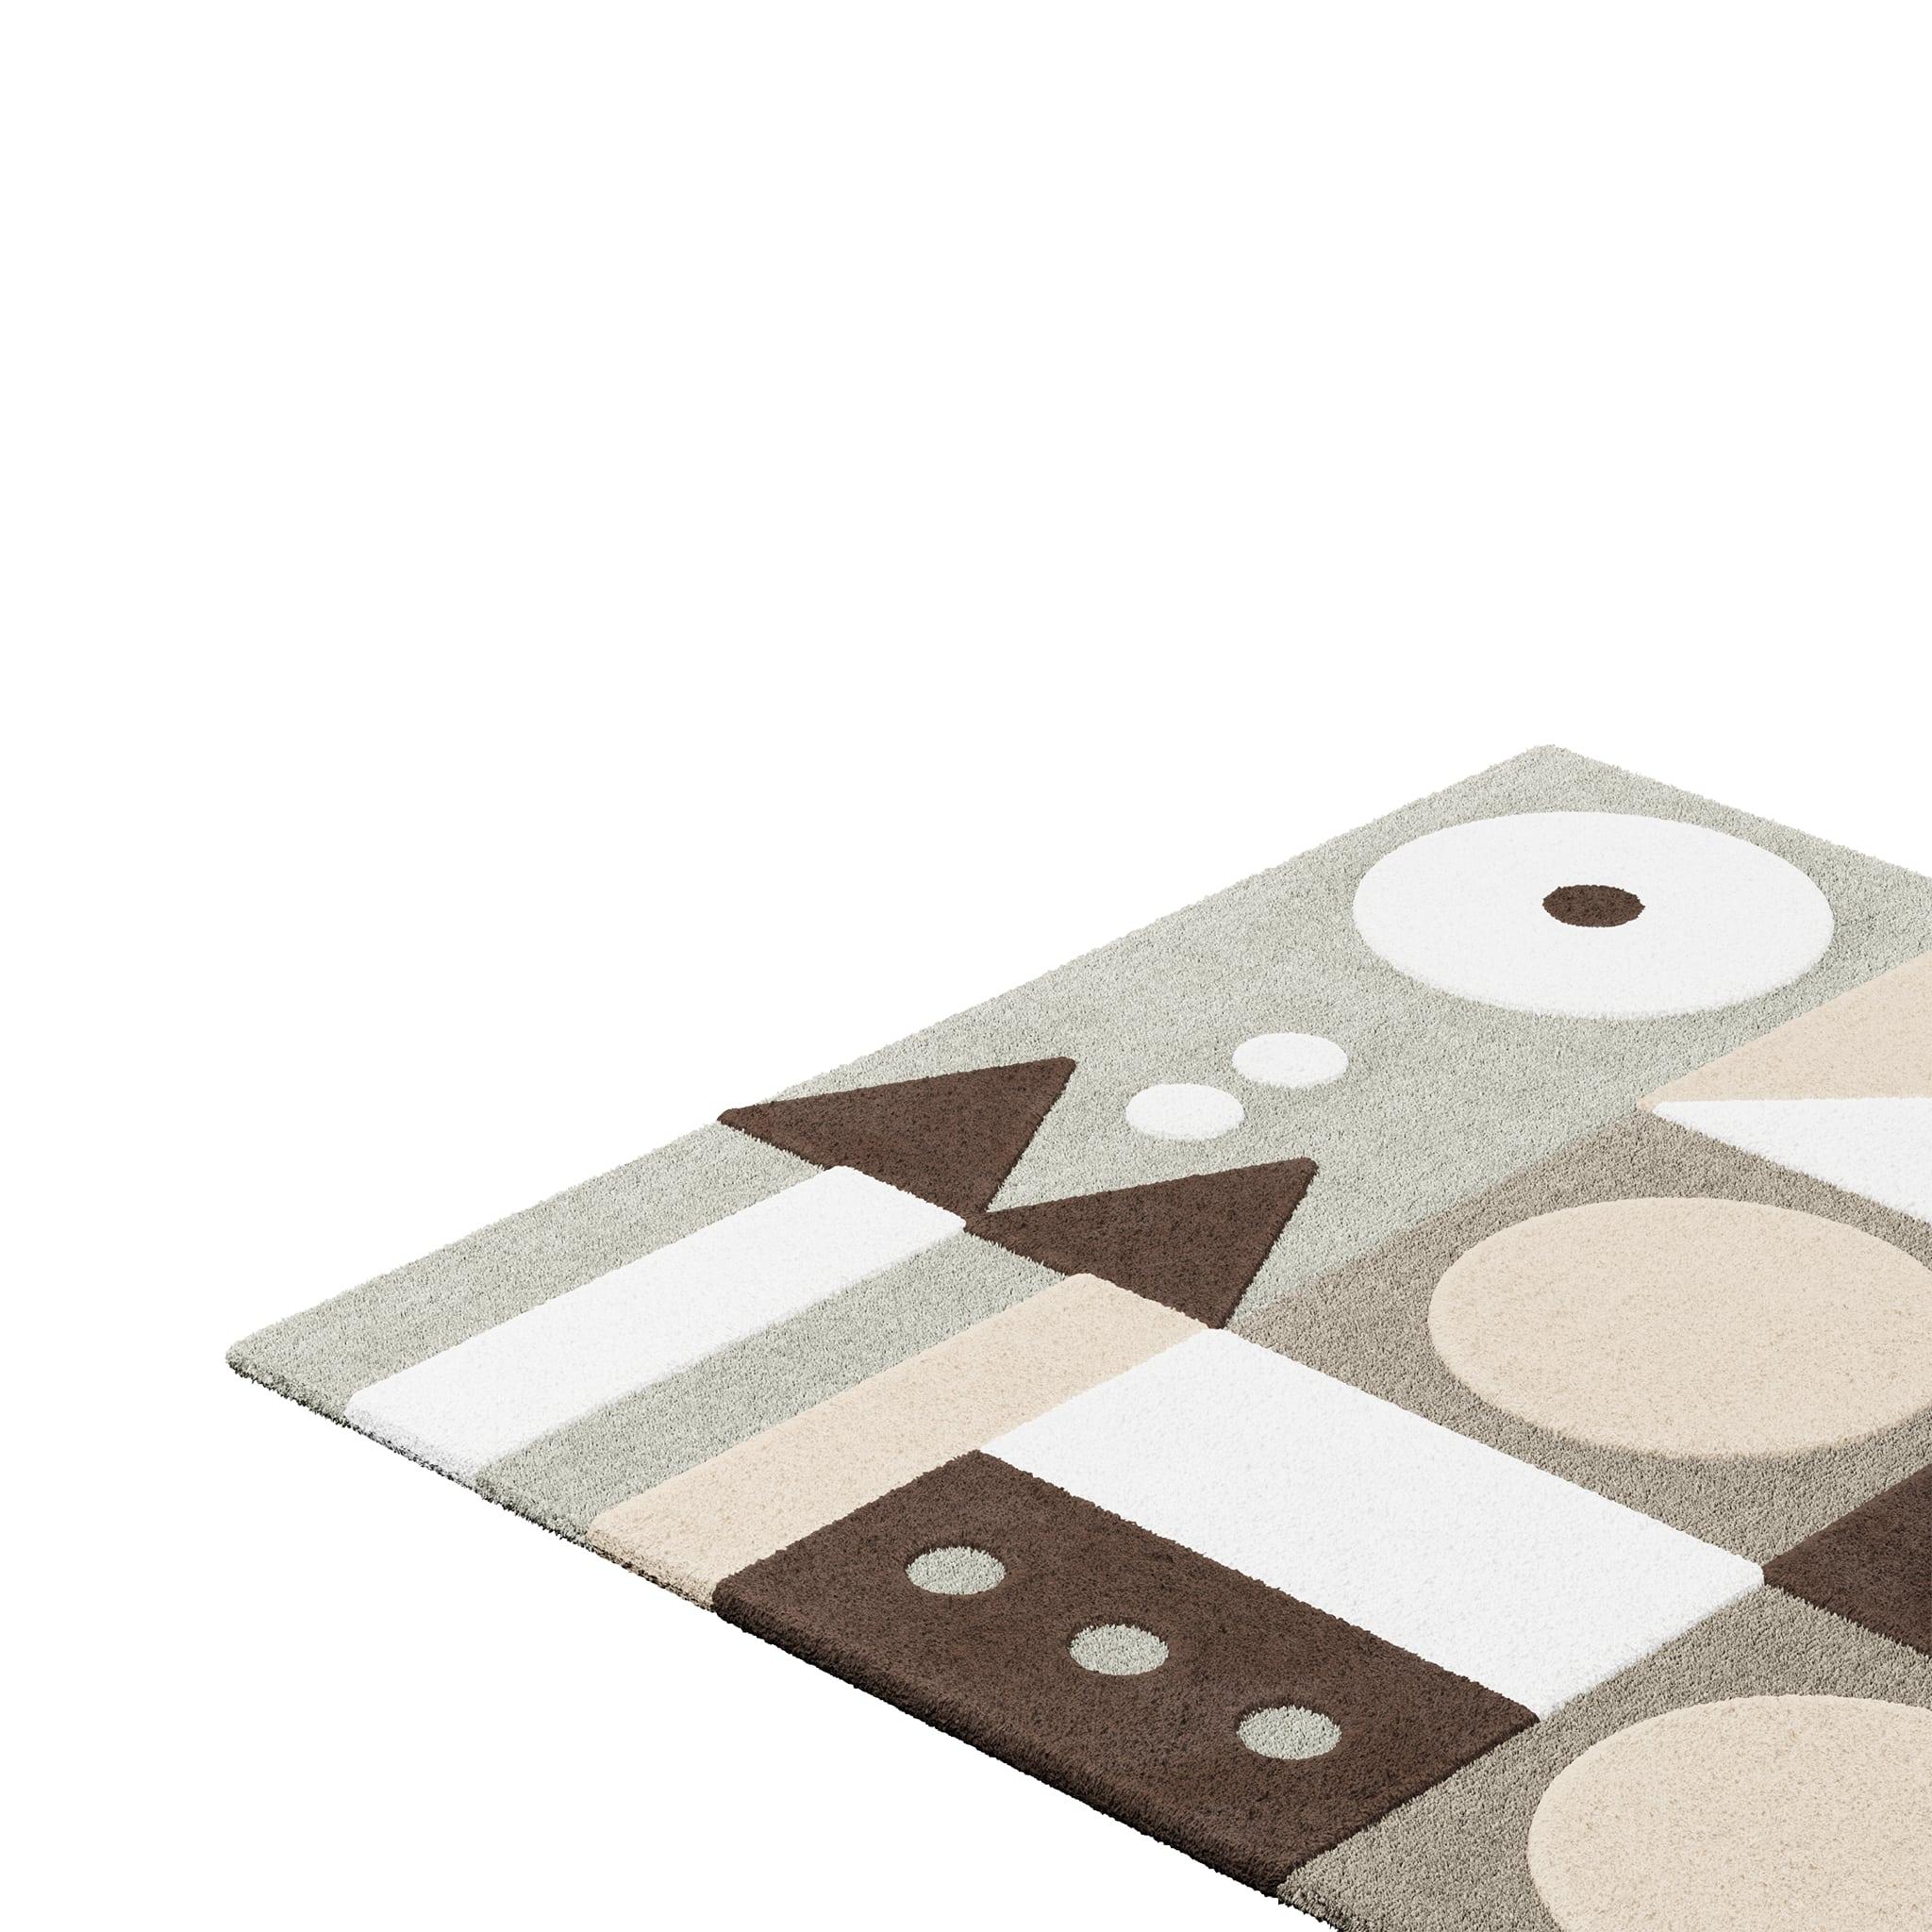 Tapis Pastel #13 ist ein pastellfarbener Teppich, der das Flair der Jahrhundertmitte mit dem Stil von Memphis Design verbindet. Die Kombination aus gedeckten Farbtönen verleiht jedem Raum Helligkeit und Komfort. 
Dieser pastellfarbene Teppich hat